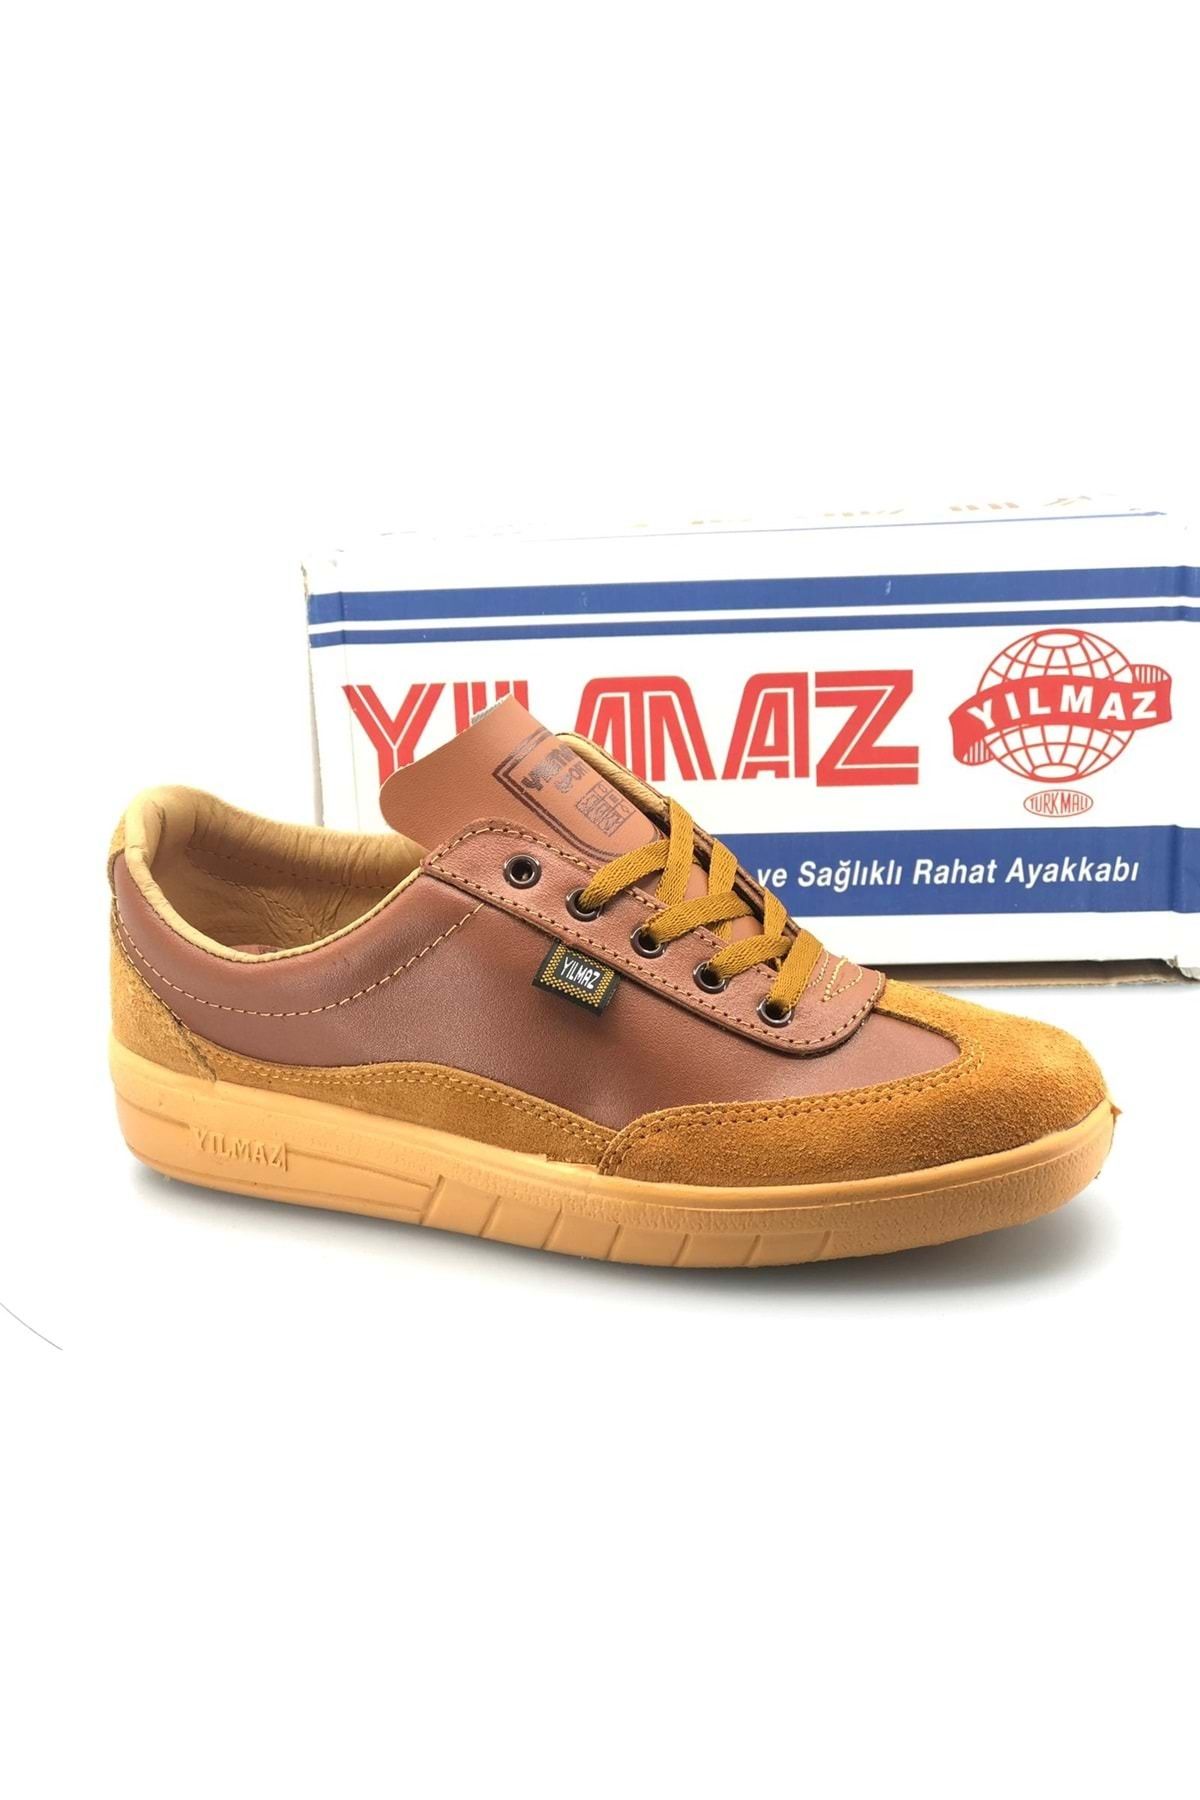 Kids Club Shoes YILMAZ Mekap %100 Hakiki Deri Unisex İş ve Spor Ayakkabı SARI